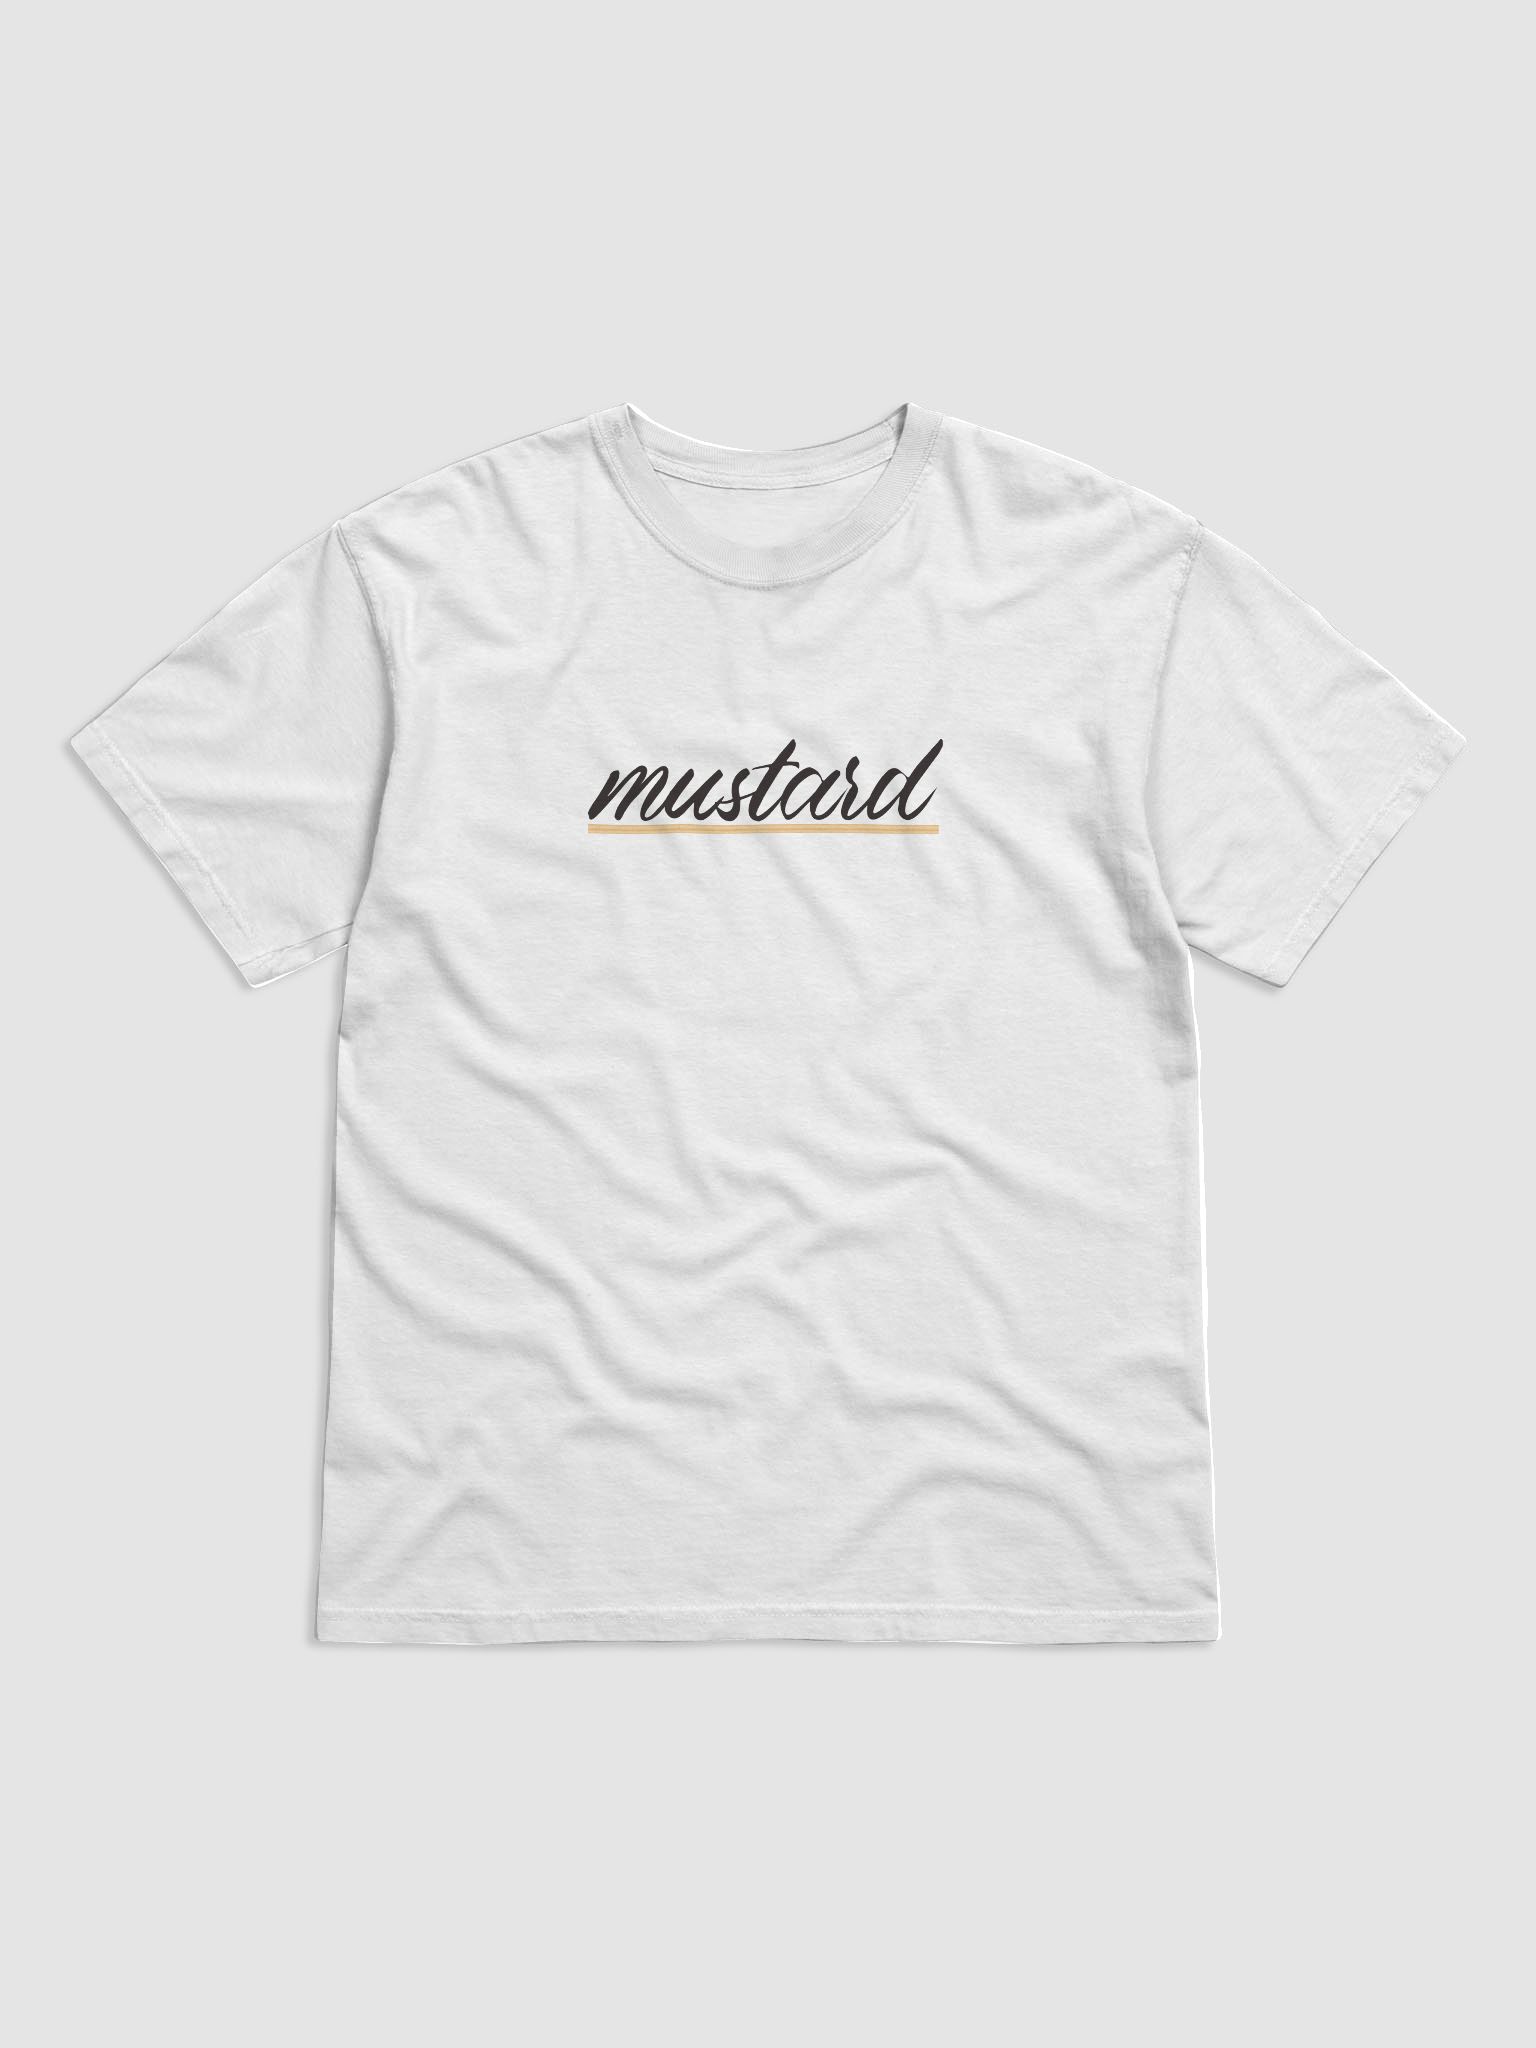 Mustard T-Shirt | Mustard